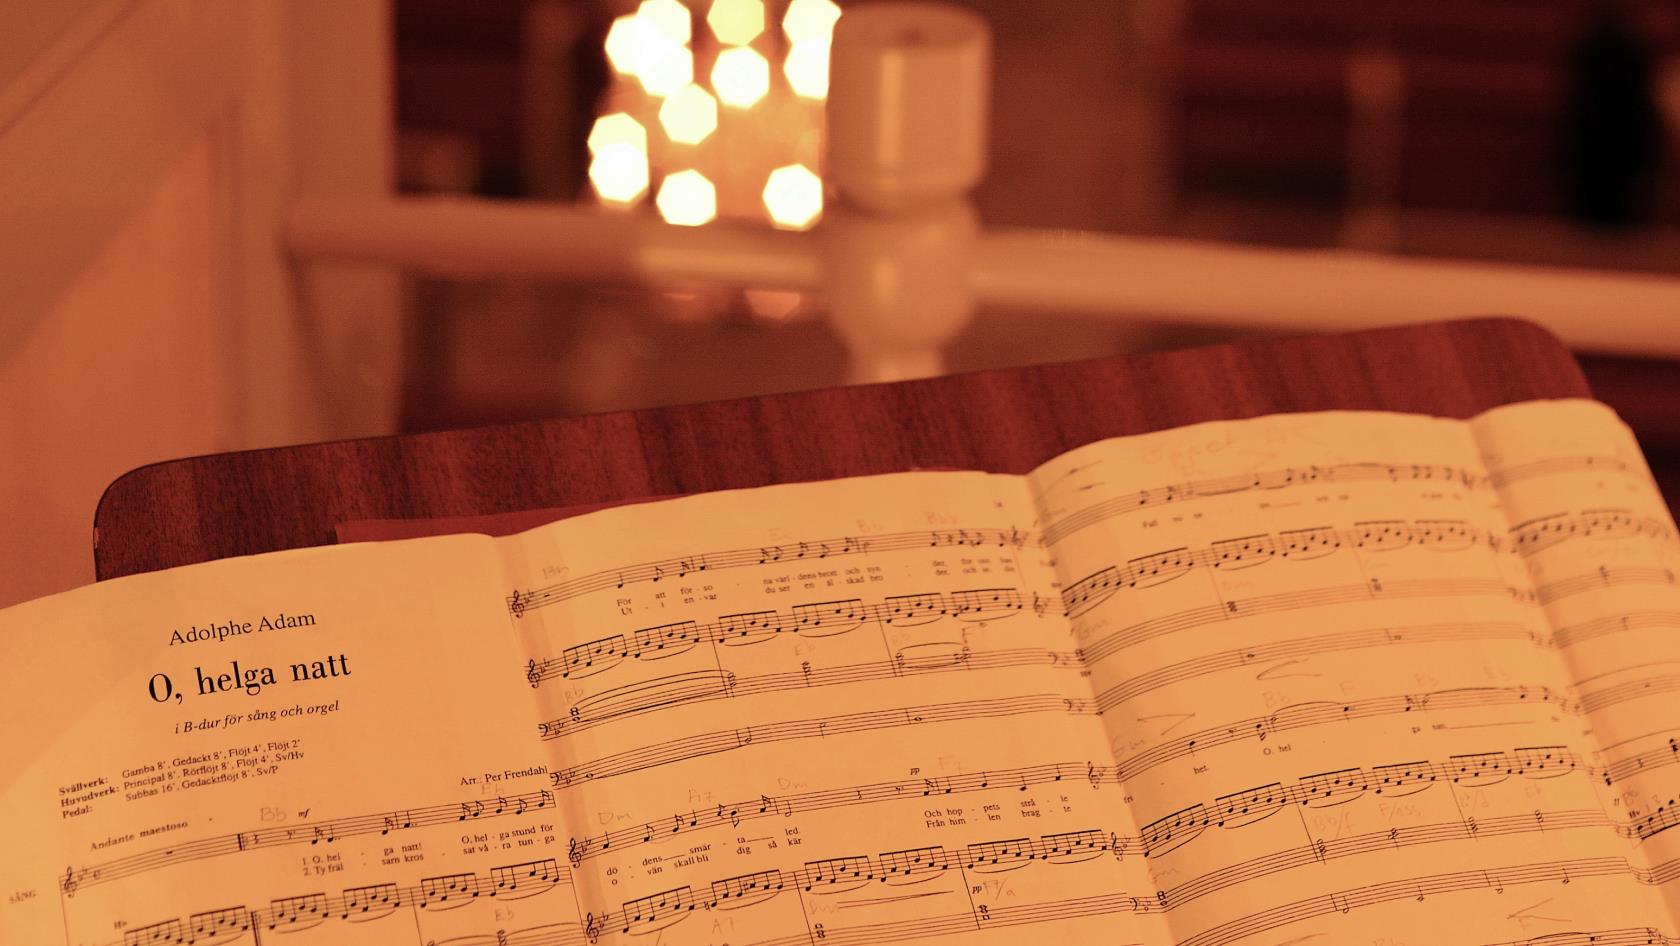 Noterna till O, helga natt står uppställda på ett notställ på orgelläktaren.